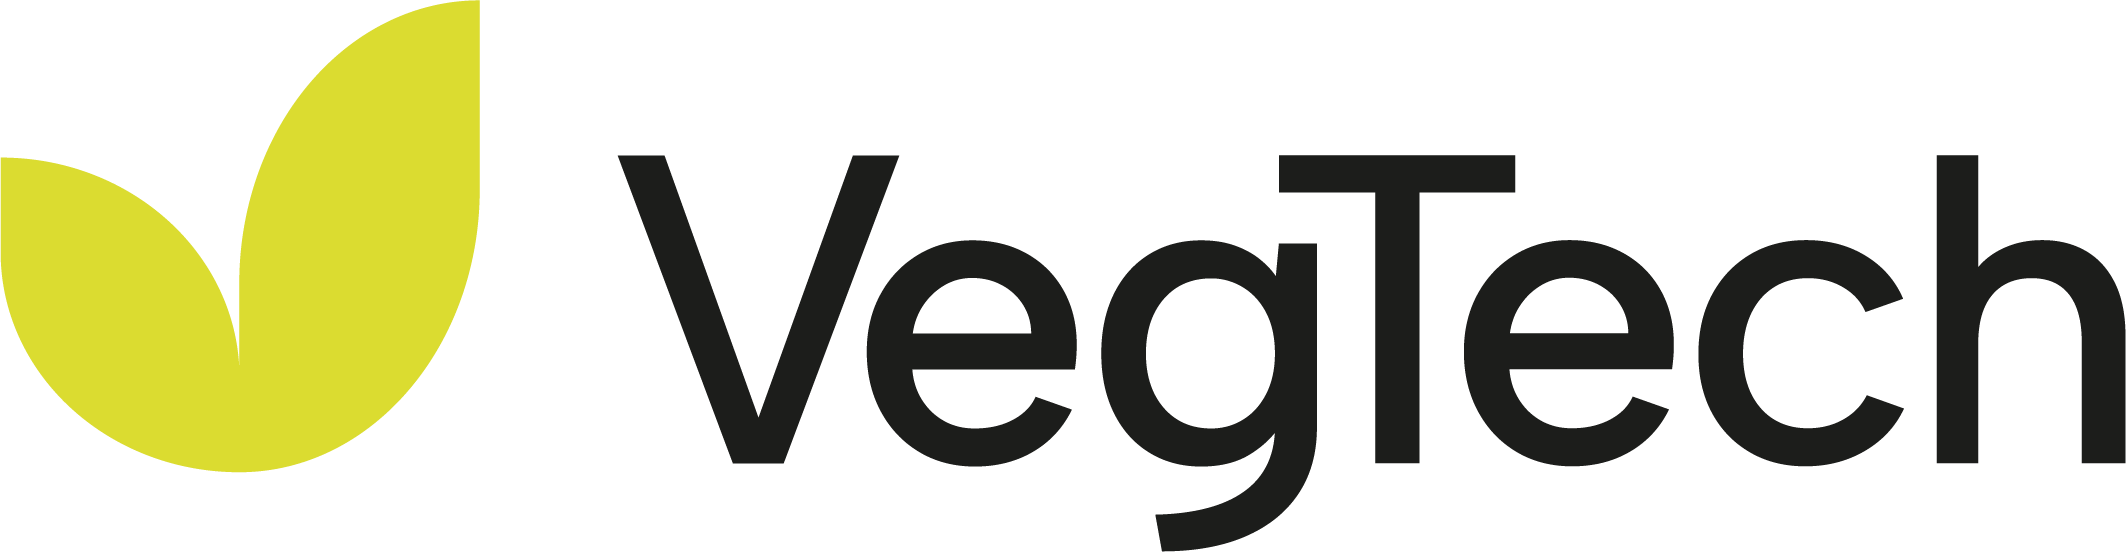 VegTech logo